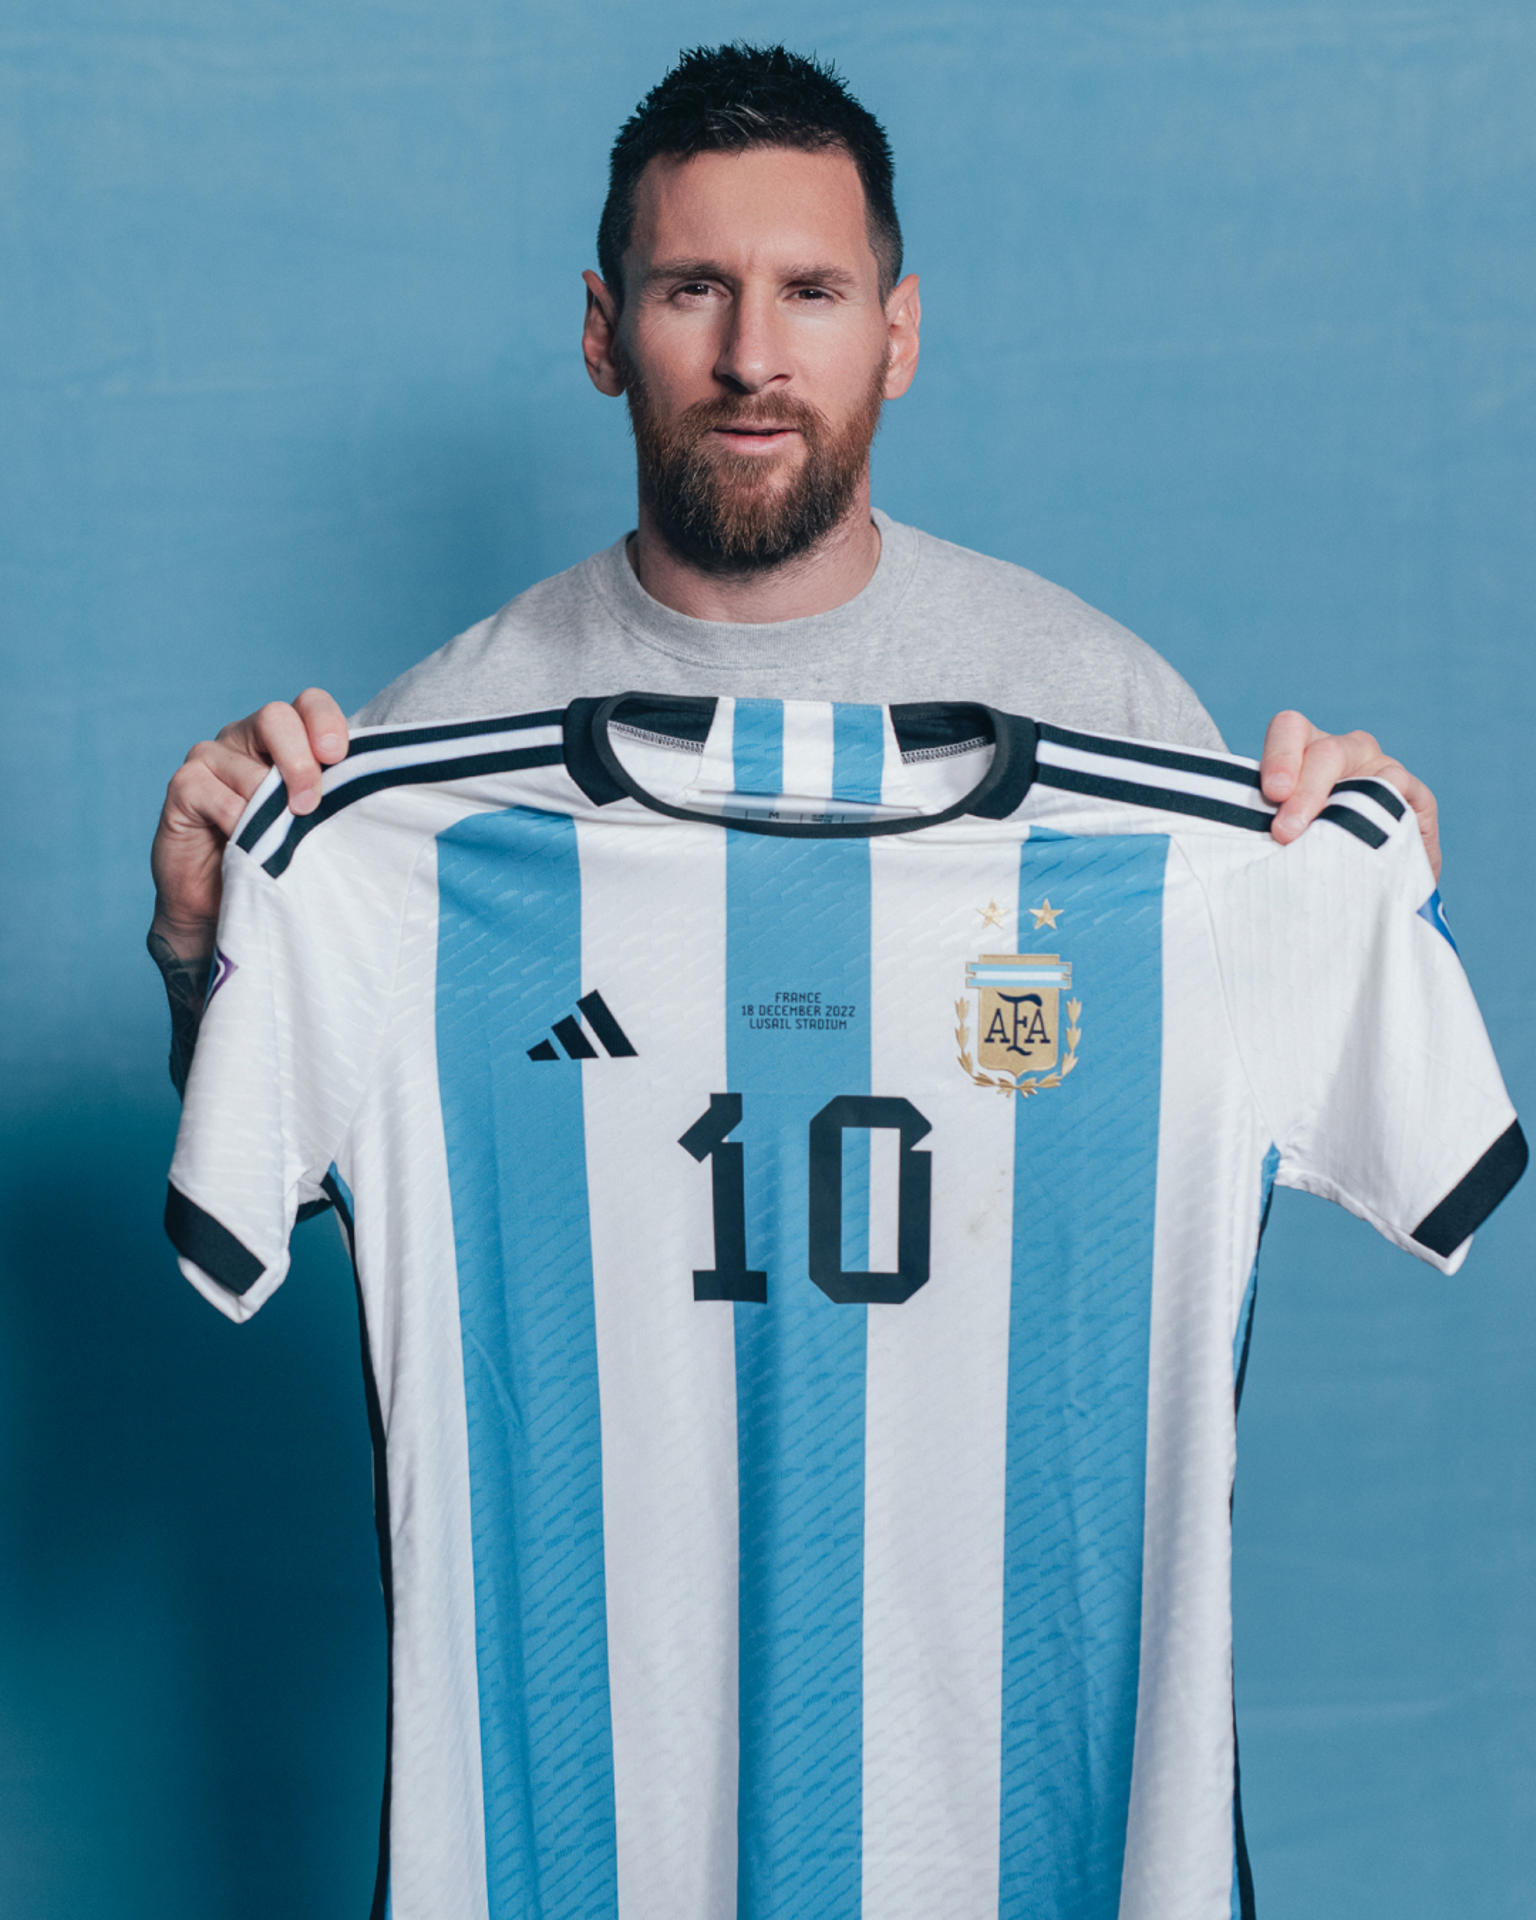 Fotografía cedida por Sam Robles a través de Sotheby's donde aparece el jugador argentino Lionel Messi mientras sostiene la camiseta con la cual jugó la final contra Francia del mundial de Qatar 2022. EFE/Sam Robles/Sotheby's /